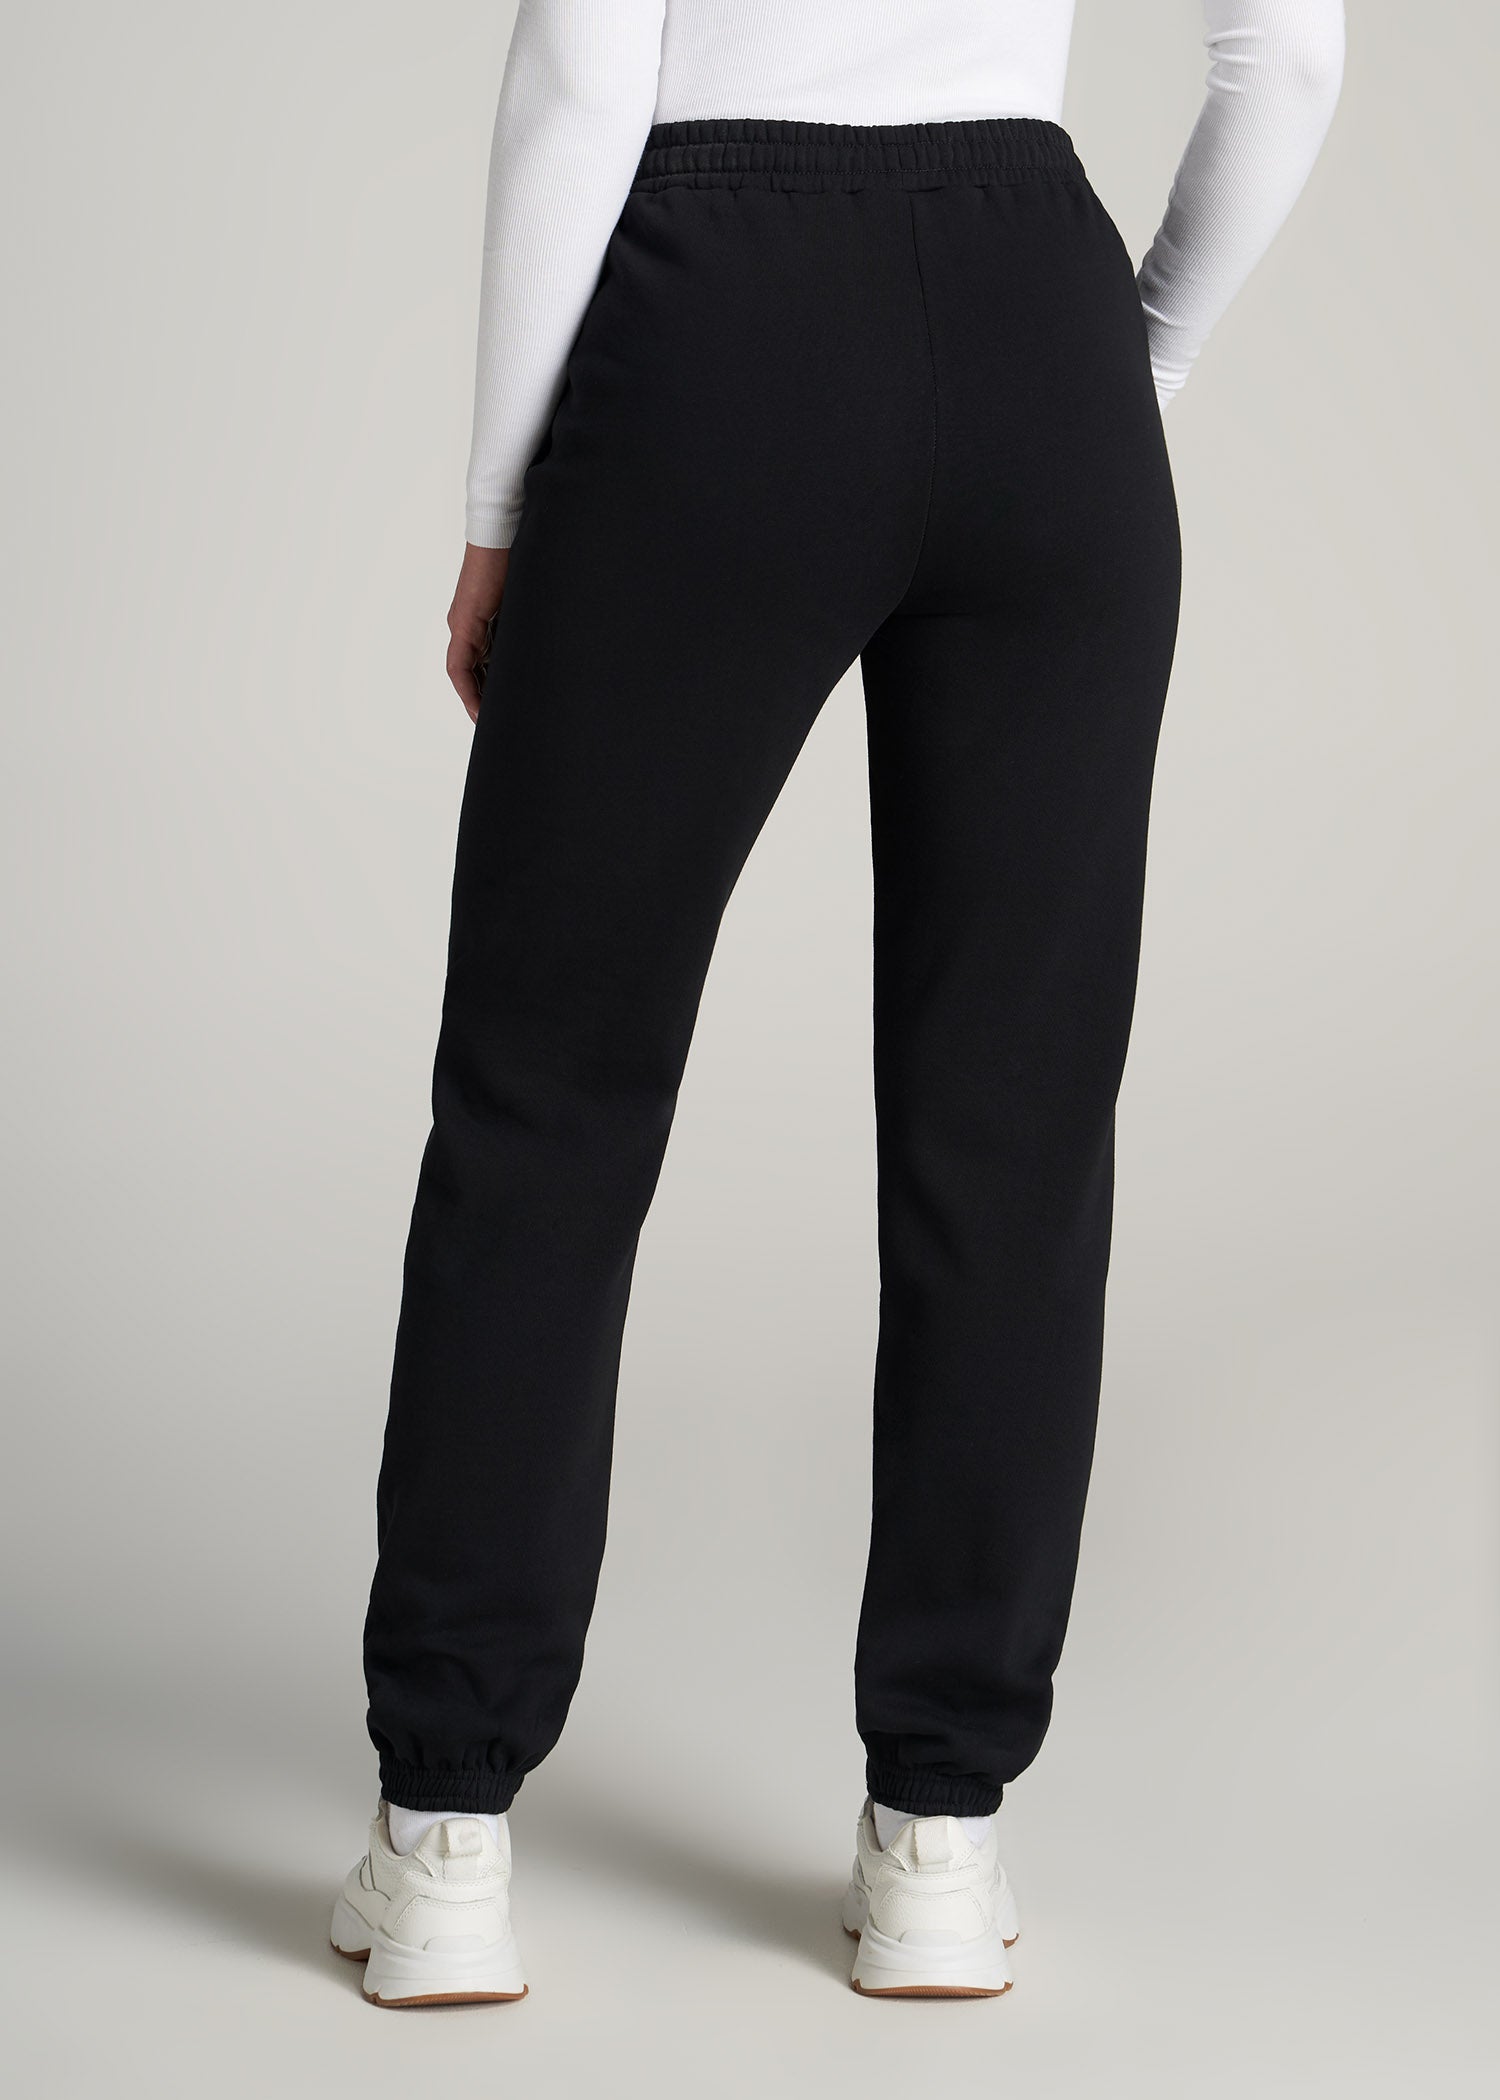 Wearever Fleece Relaxed Women's Tall Sweatpants Black